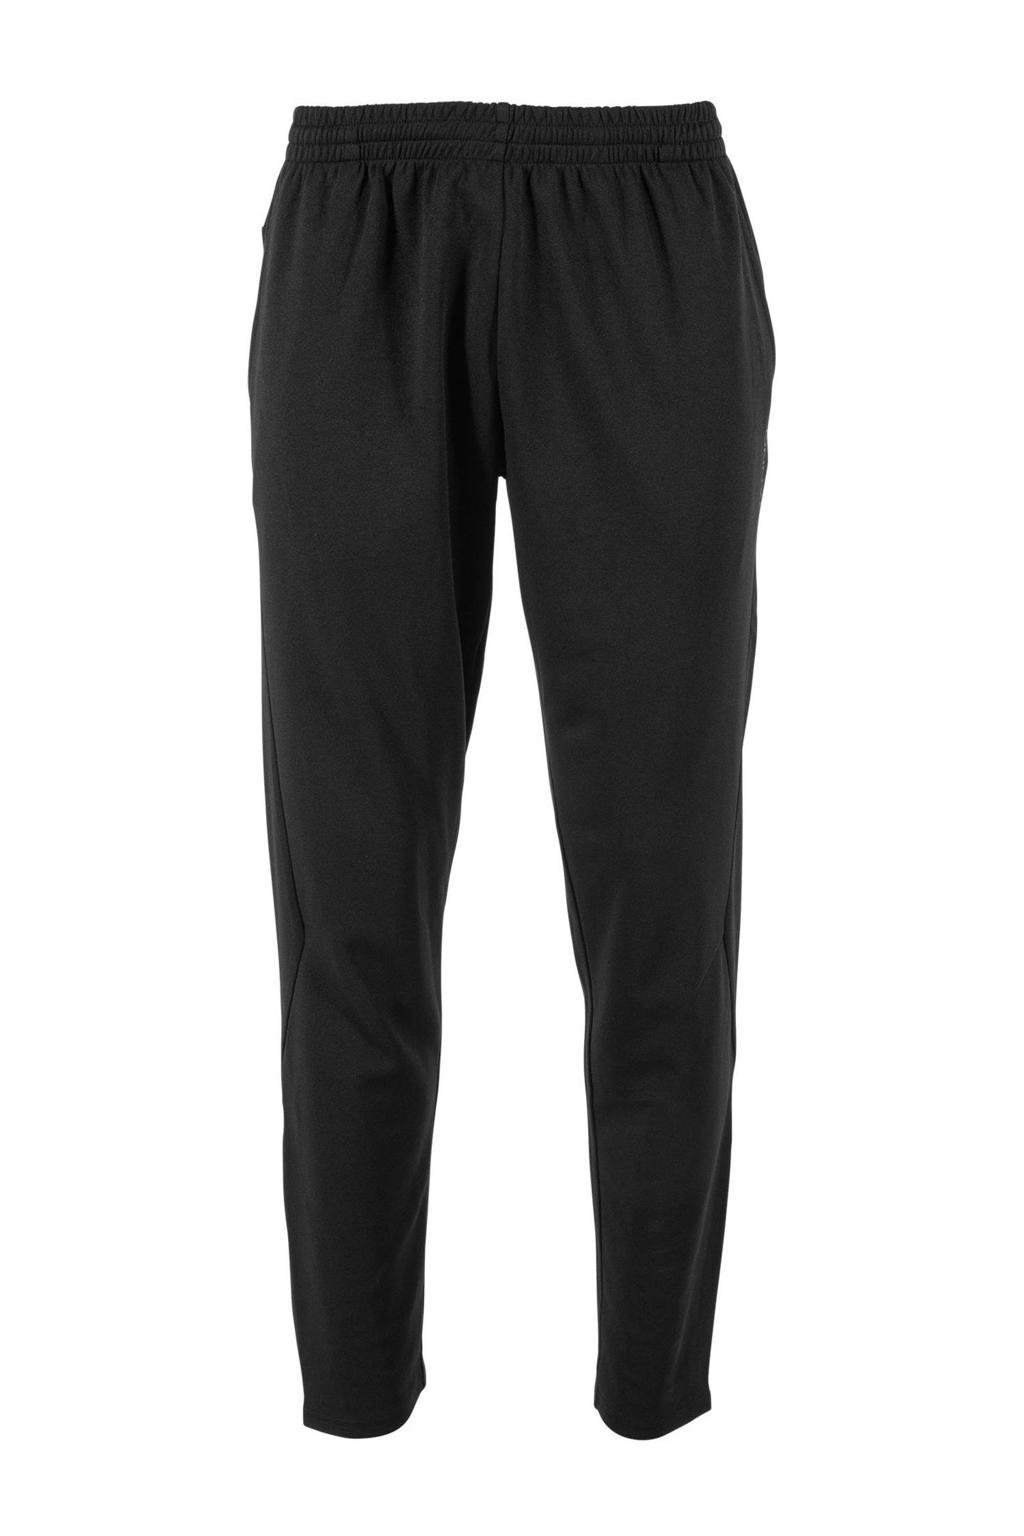 Zwarte heren Stanno trainingsbroek van polyester met regular fit, regular waist en elastische tailleband met koord